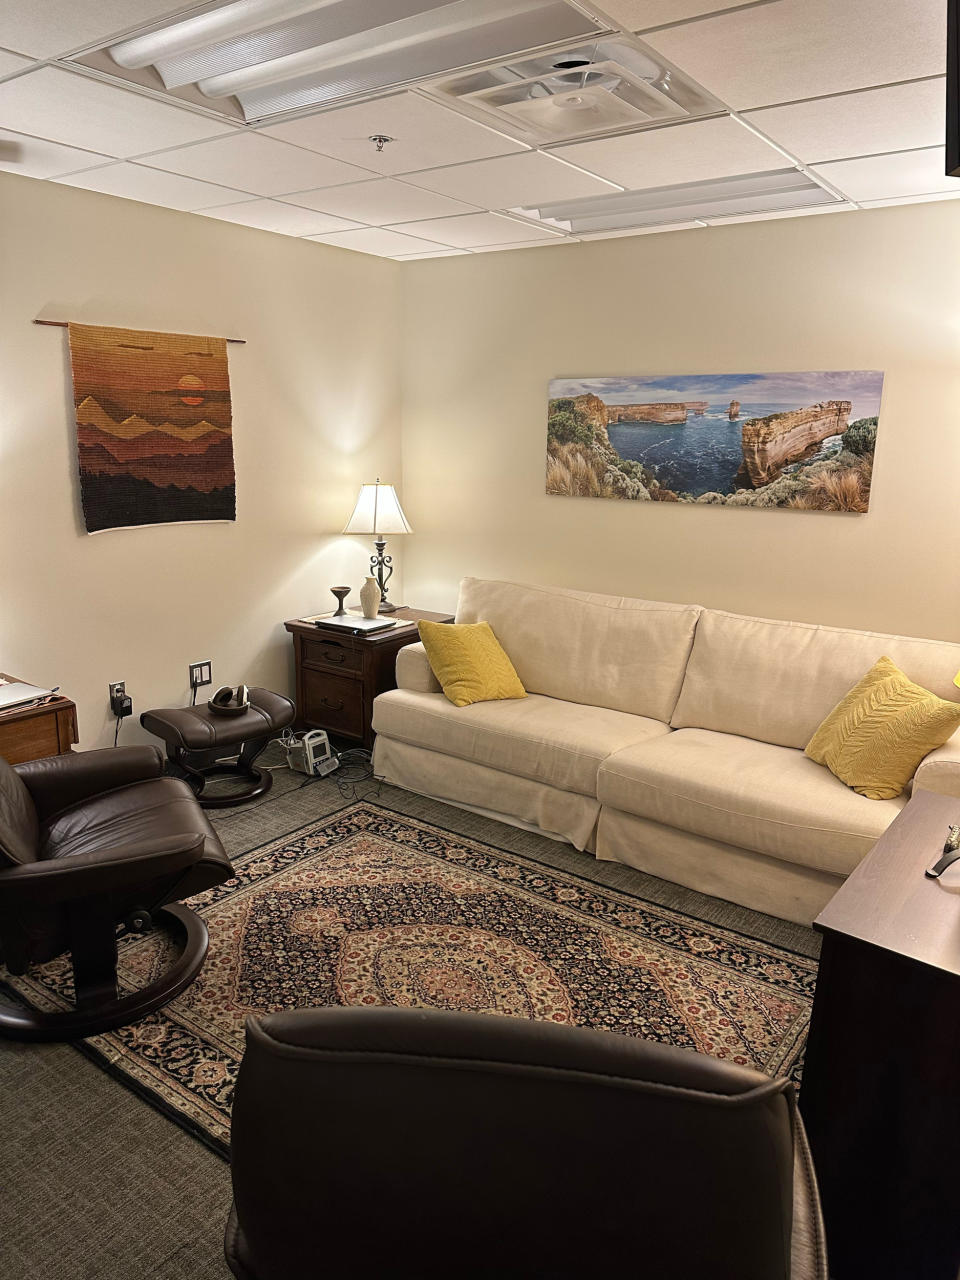 The therapy room at Johns Hopkins (Dr. Akshay Syal / NBC News)